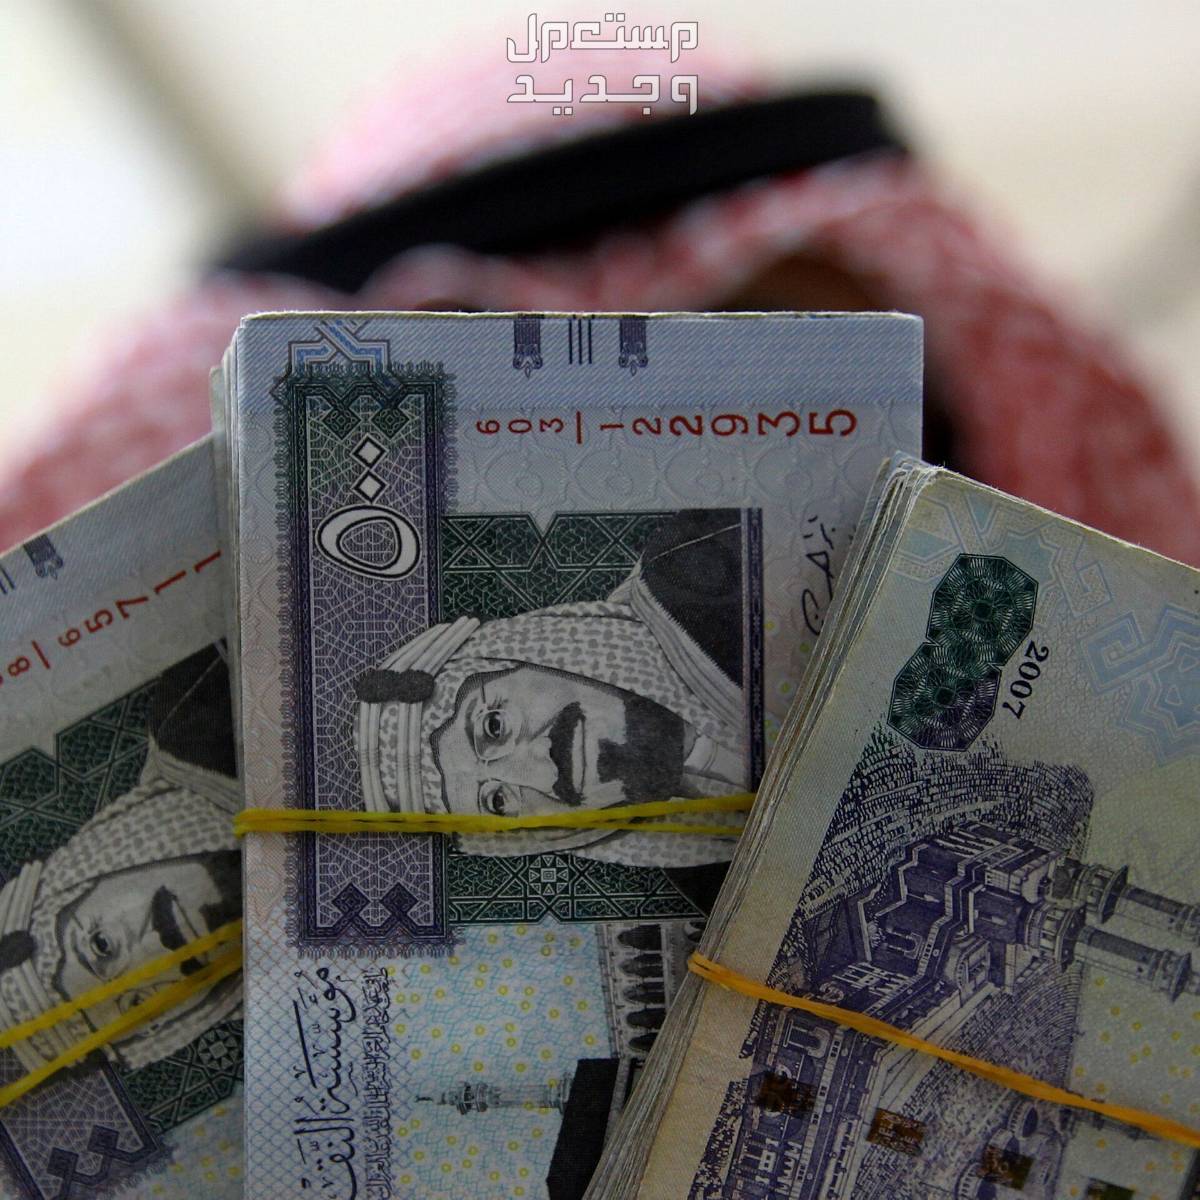 تفسير رؤية الأوراق النقدية في المنام.. هل دليل على الخير أو الشر؟ في السعودية تفسير رؤية الأوراق النقدية في المنام